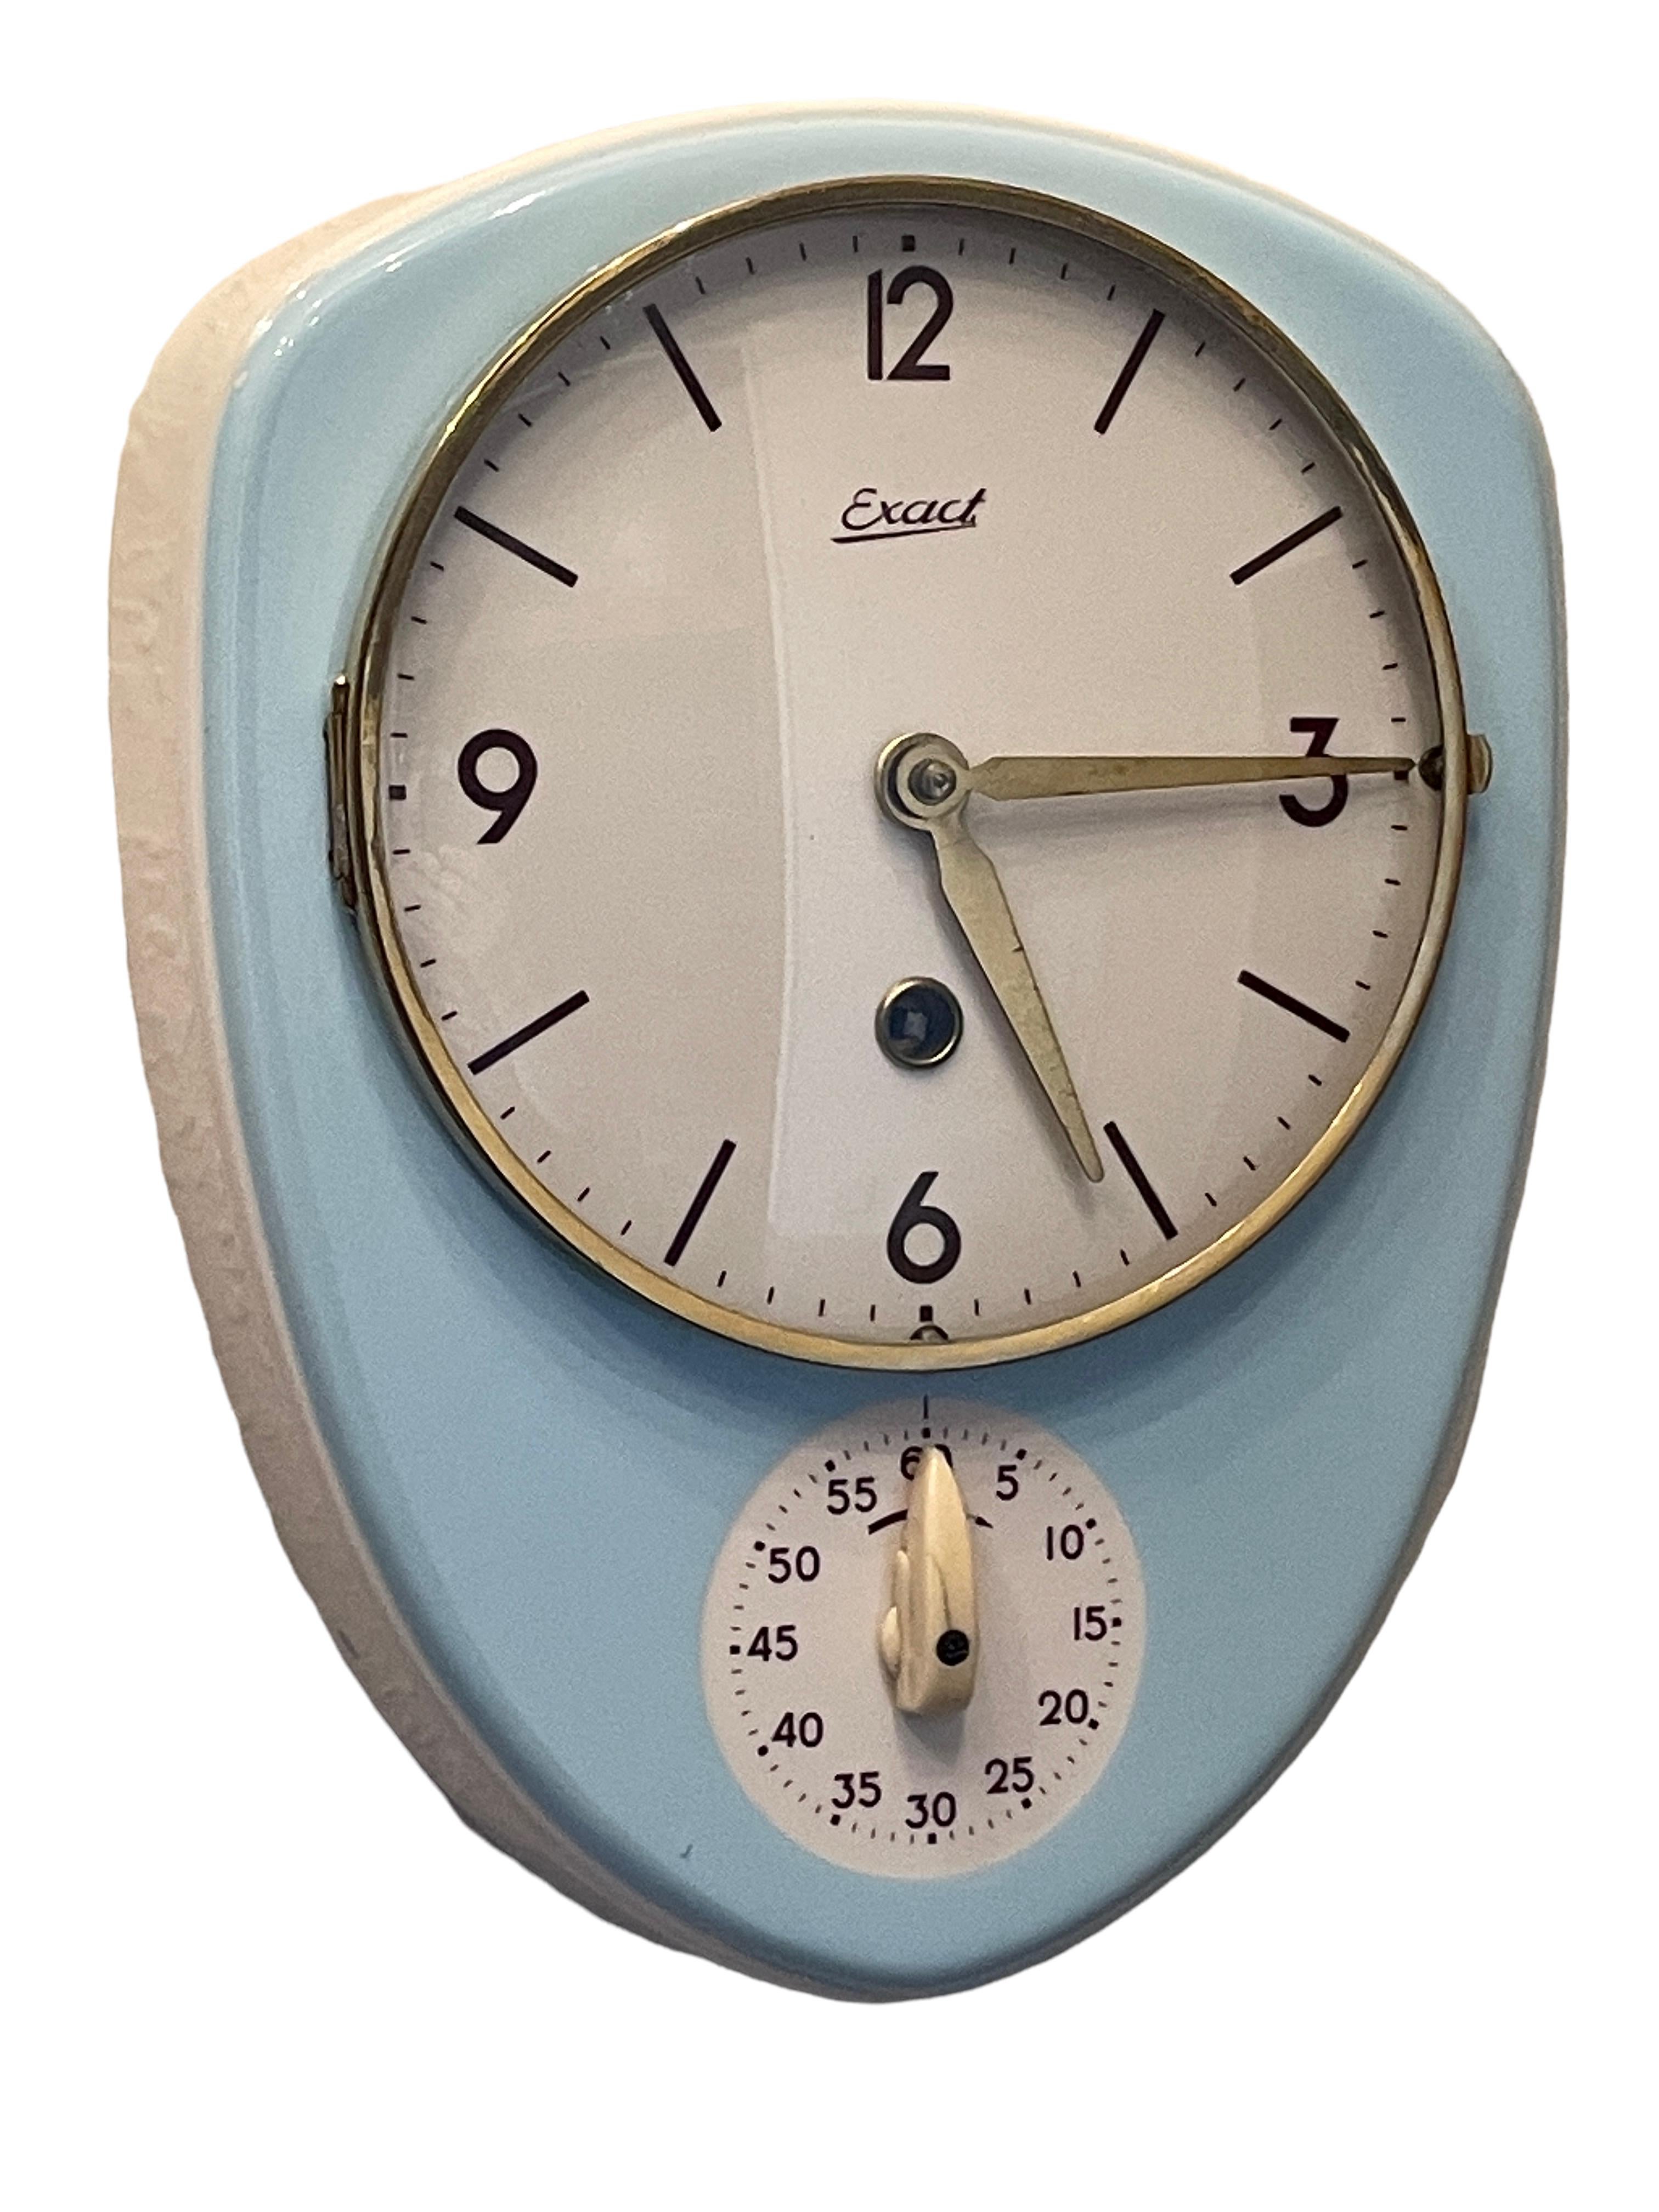 Atemberaubende original wichtige blau glasierte Keramik Küchenuhr entworfen und hergestellt von Exact, Deutschland, 1950er Jahre. Diese originelle alte Uhr ist eine bekannte Designikone, die in vielen wichtigen Büchern und Katalogen abgebildet ist.